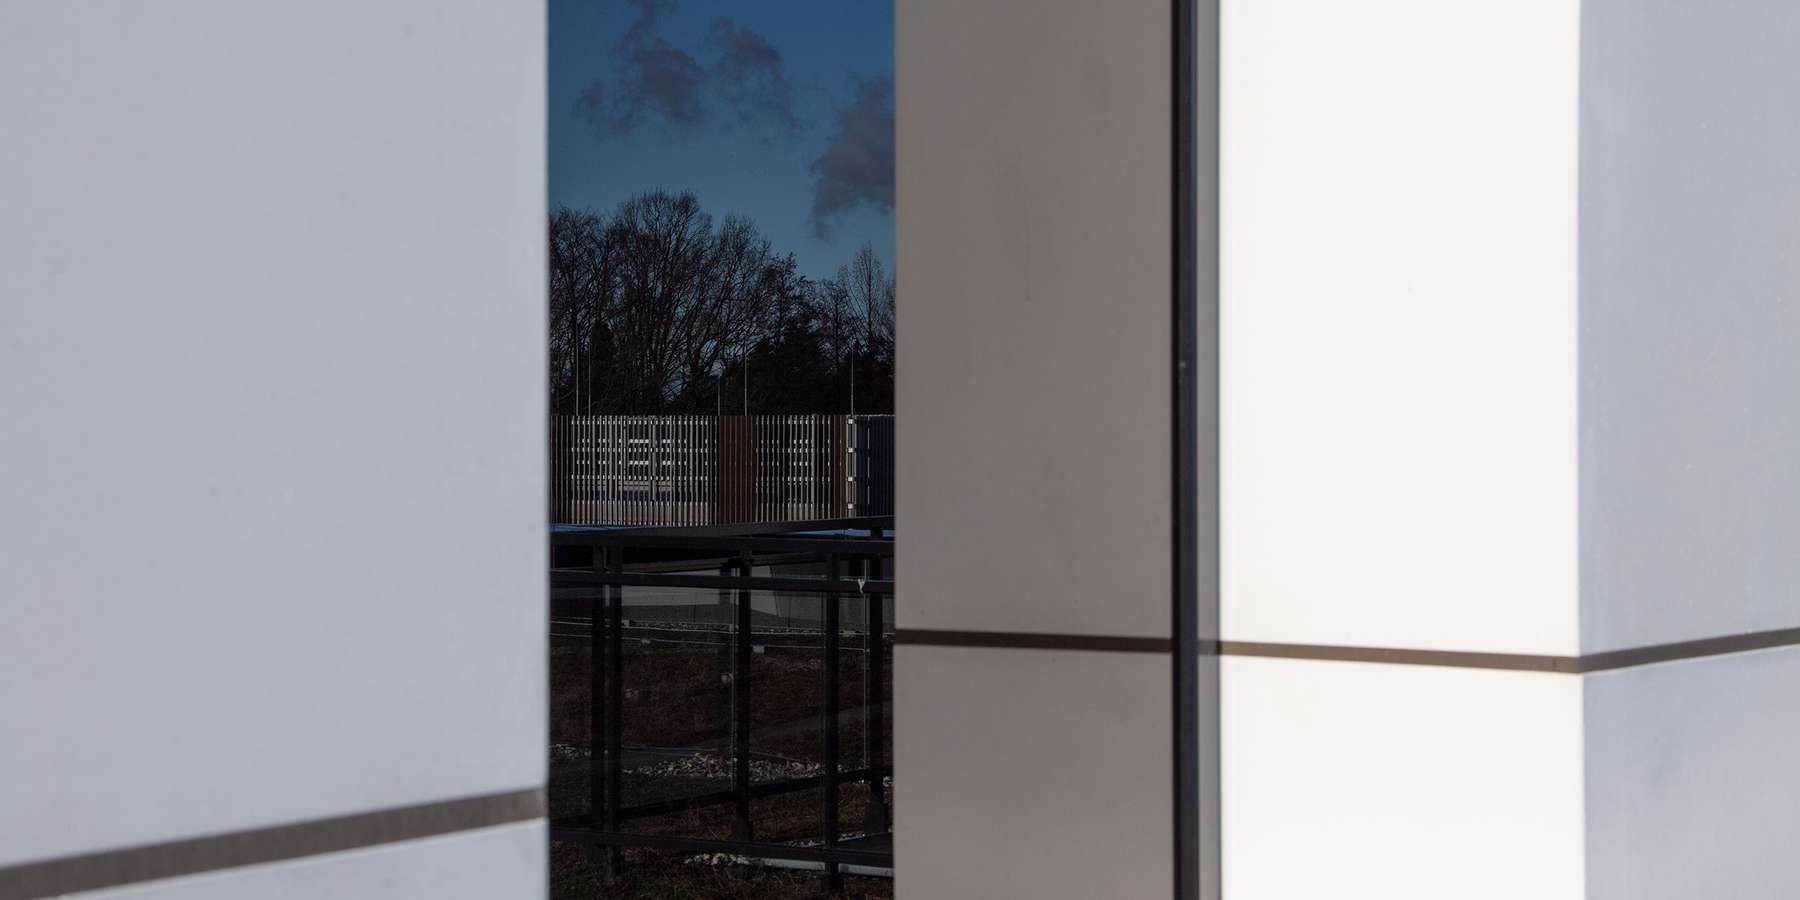 Spieglein, Spieglein auf dem Dach! Die Parkpalette spiegelt sich in der Scheibe eines Beratungsraums auf dem extensiv begrünten Dach des Neubaus. © 2022 Christian Hoffmann, FM M-V